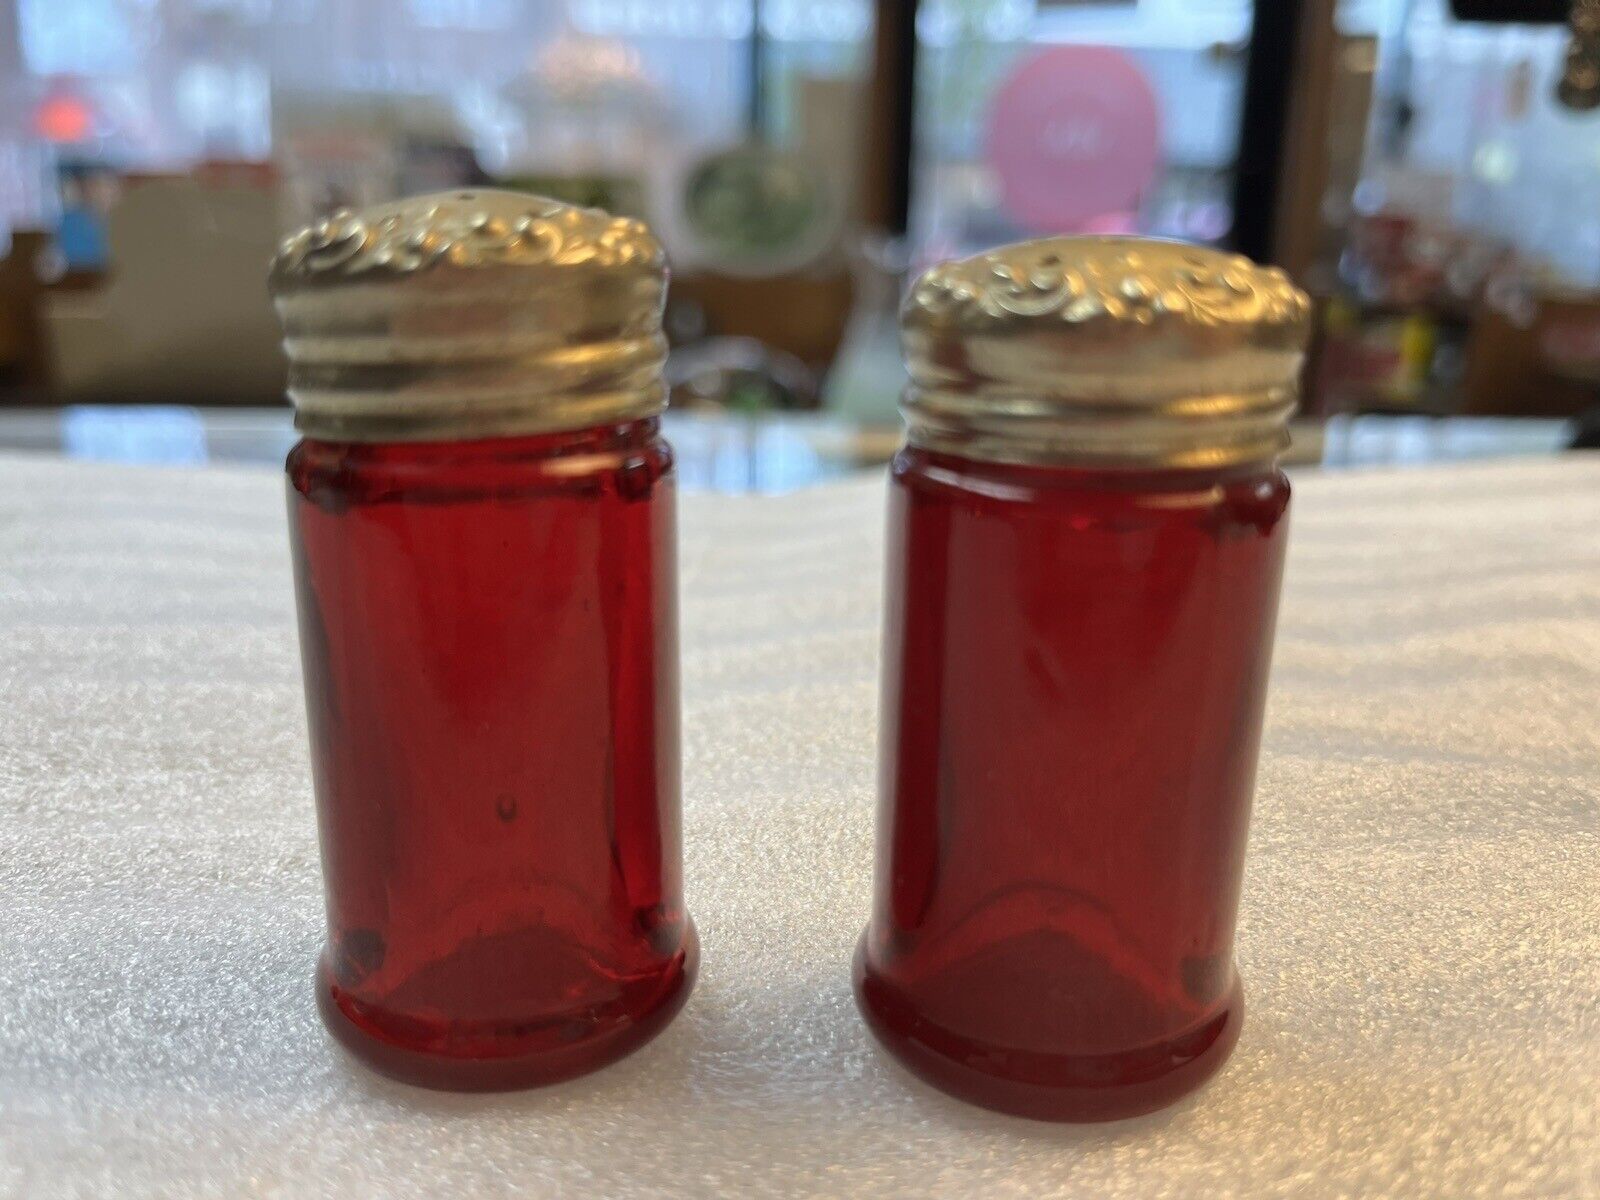 AS IS Paden City Glass Mold Blown Red Salt & Pepper Shaker Set-1927-37 RARE